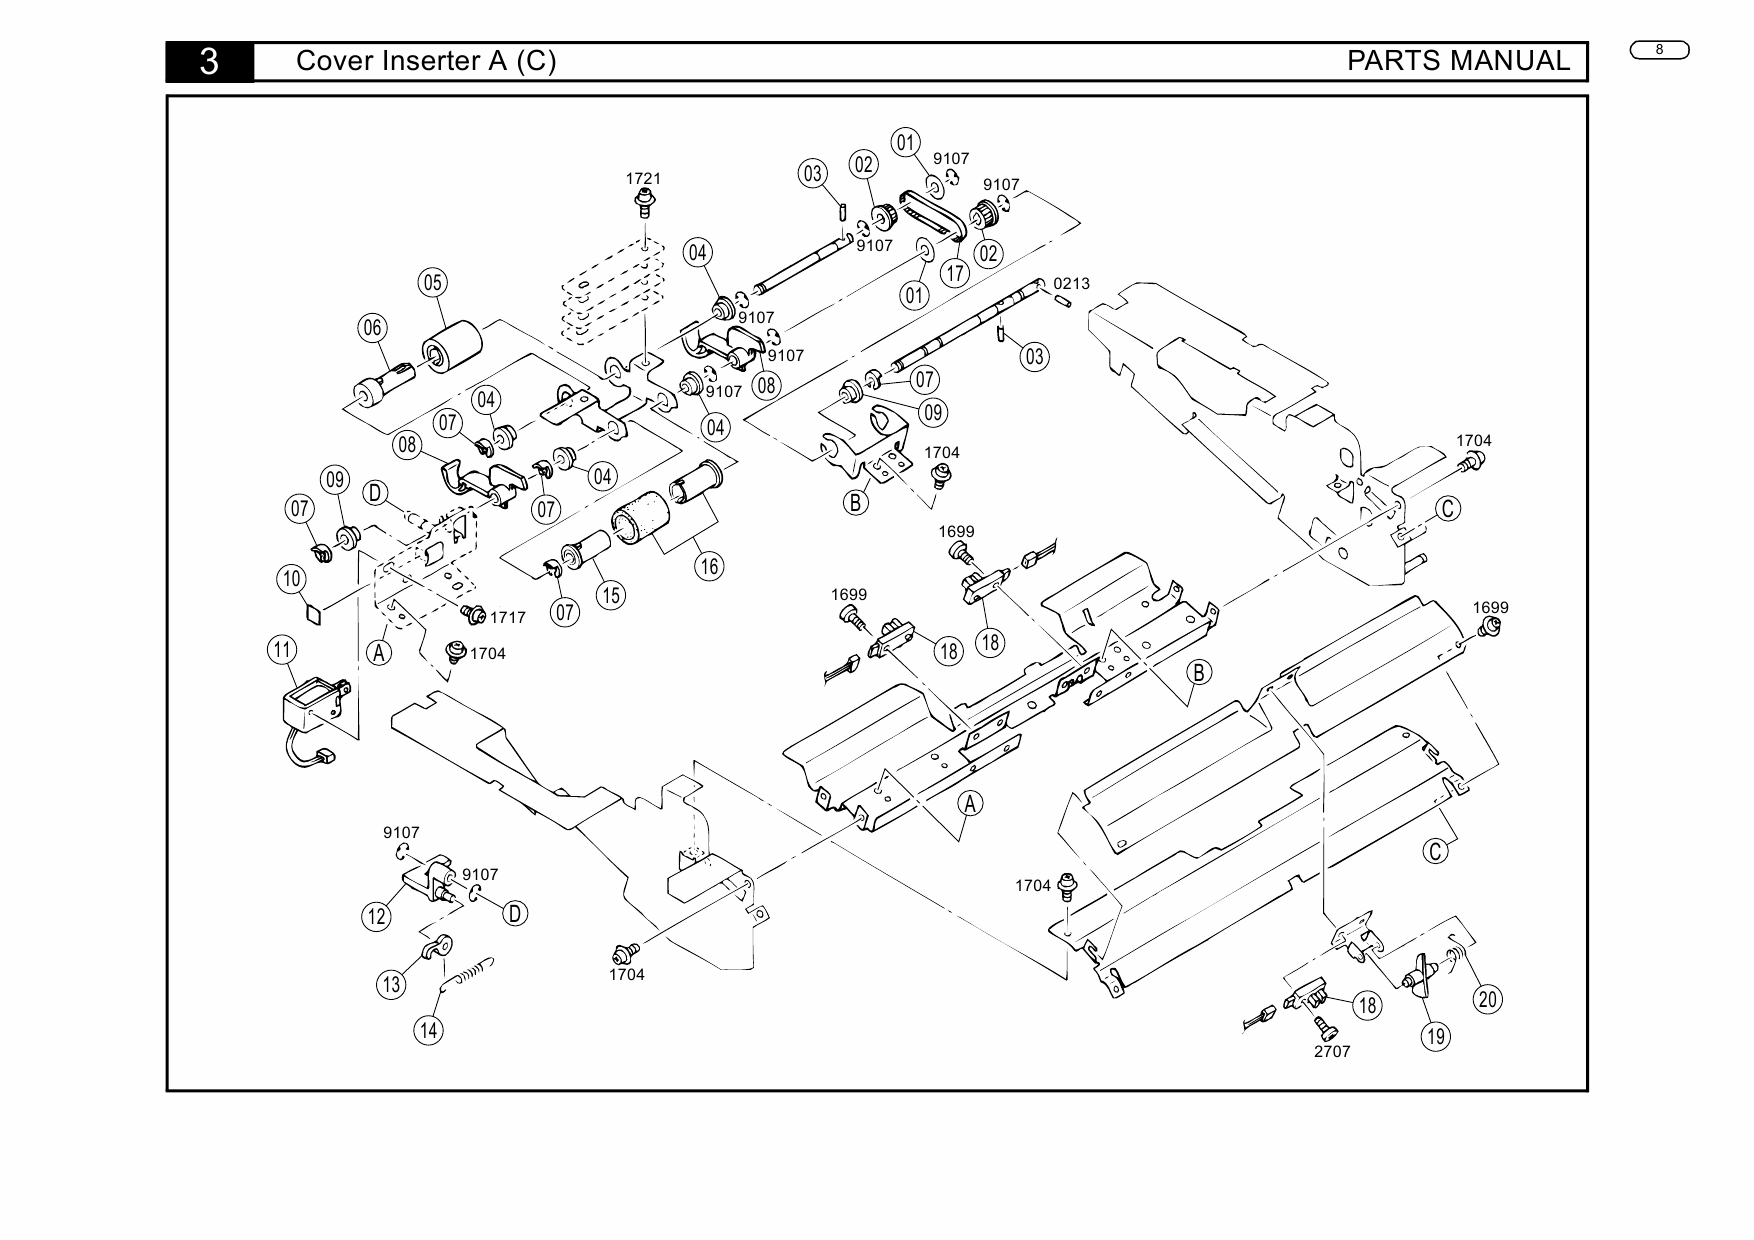 Konica-Minolta Options Cover-Inserter-A Parts Manual-5